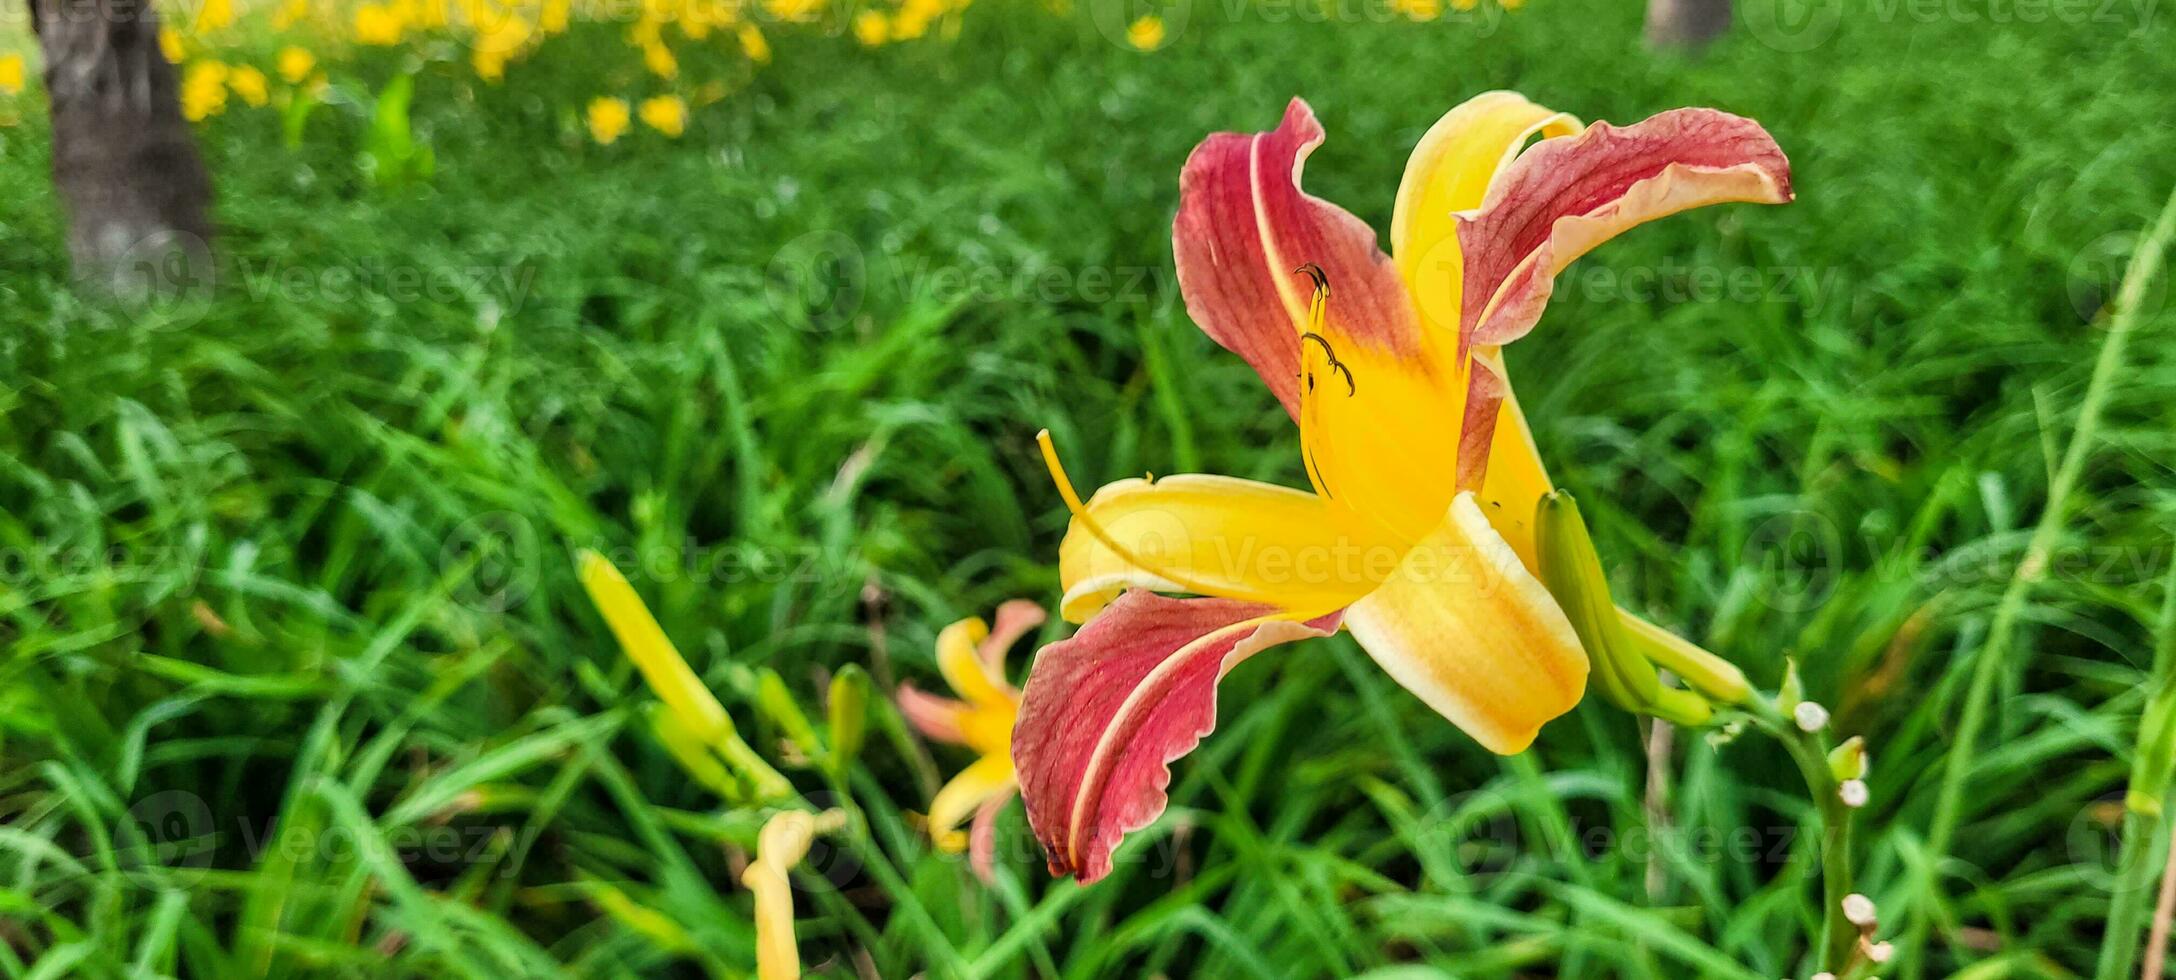 vara förtrollade förbi de överflöd av en grön trädgård, var en vibrerande gul blomma stjäl de show. ett bild den där inspirerar friskhet och vitalitet. skaffa sig den där Rör av natur nu foto